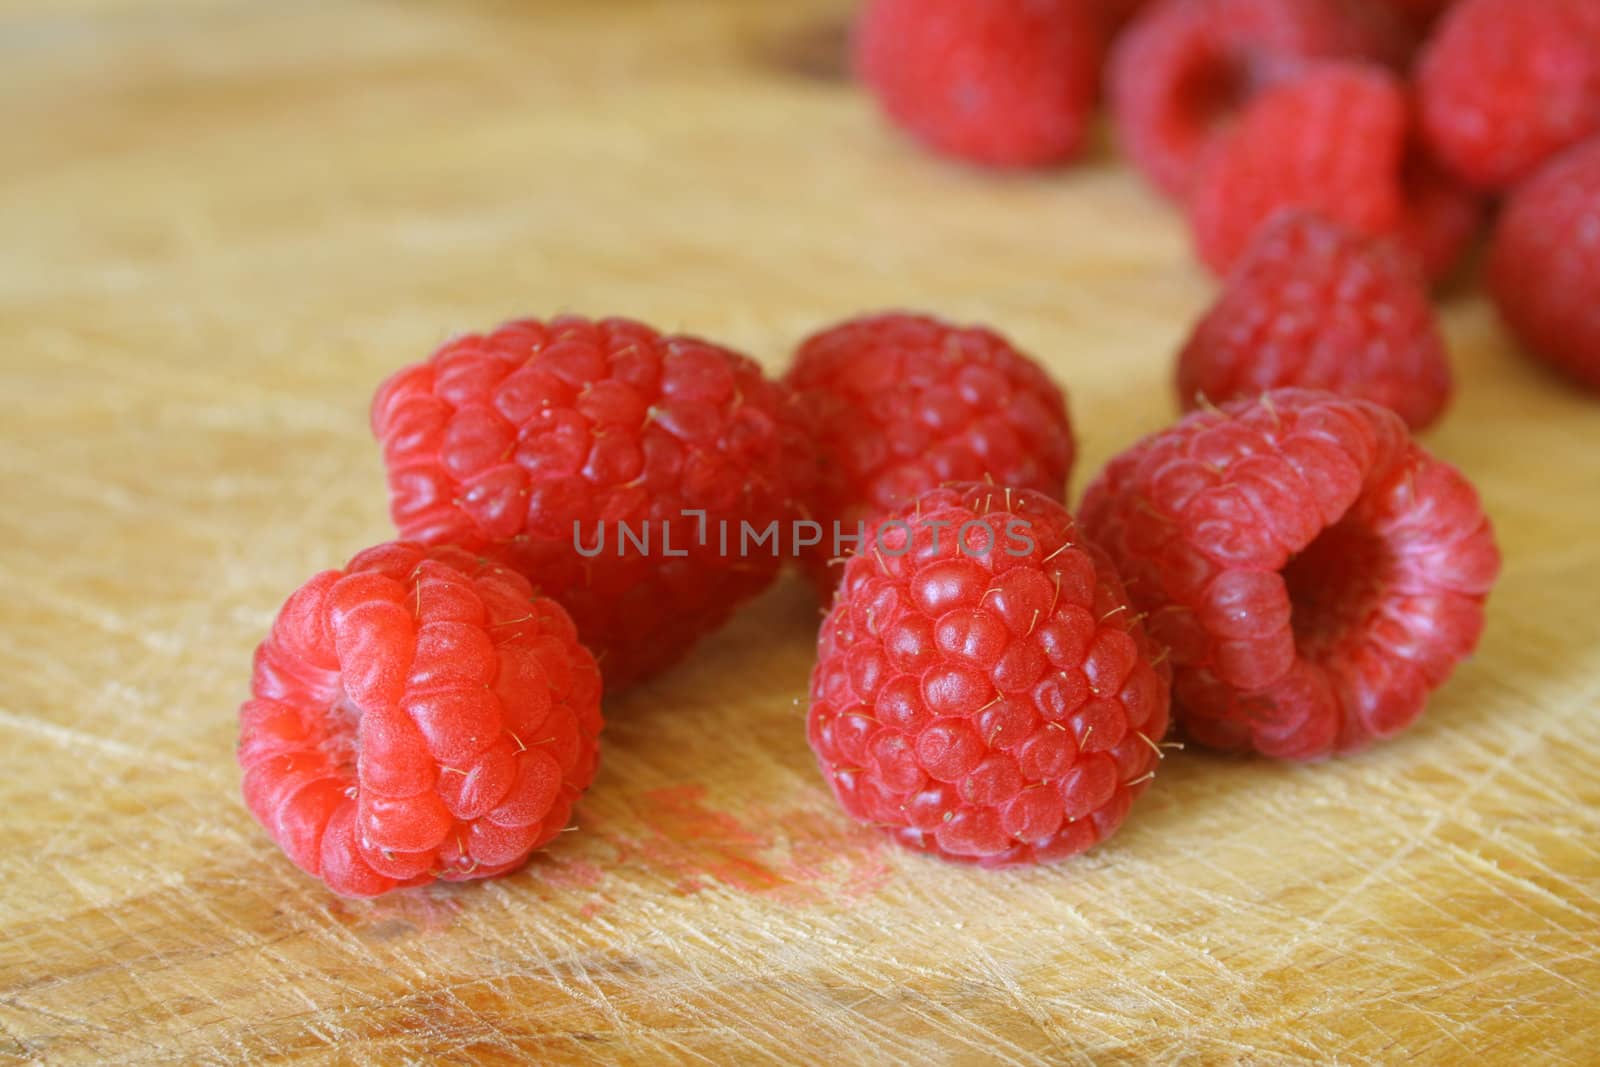 Sweet Raspberries by thephotoguy